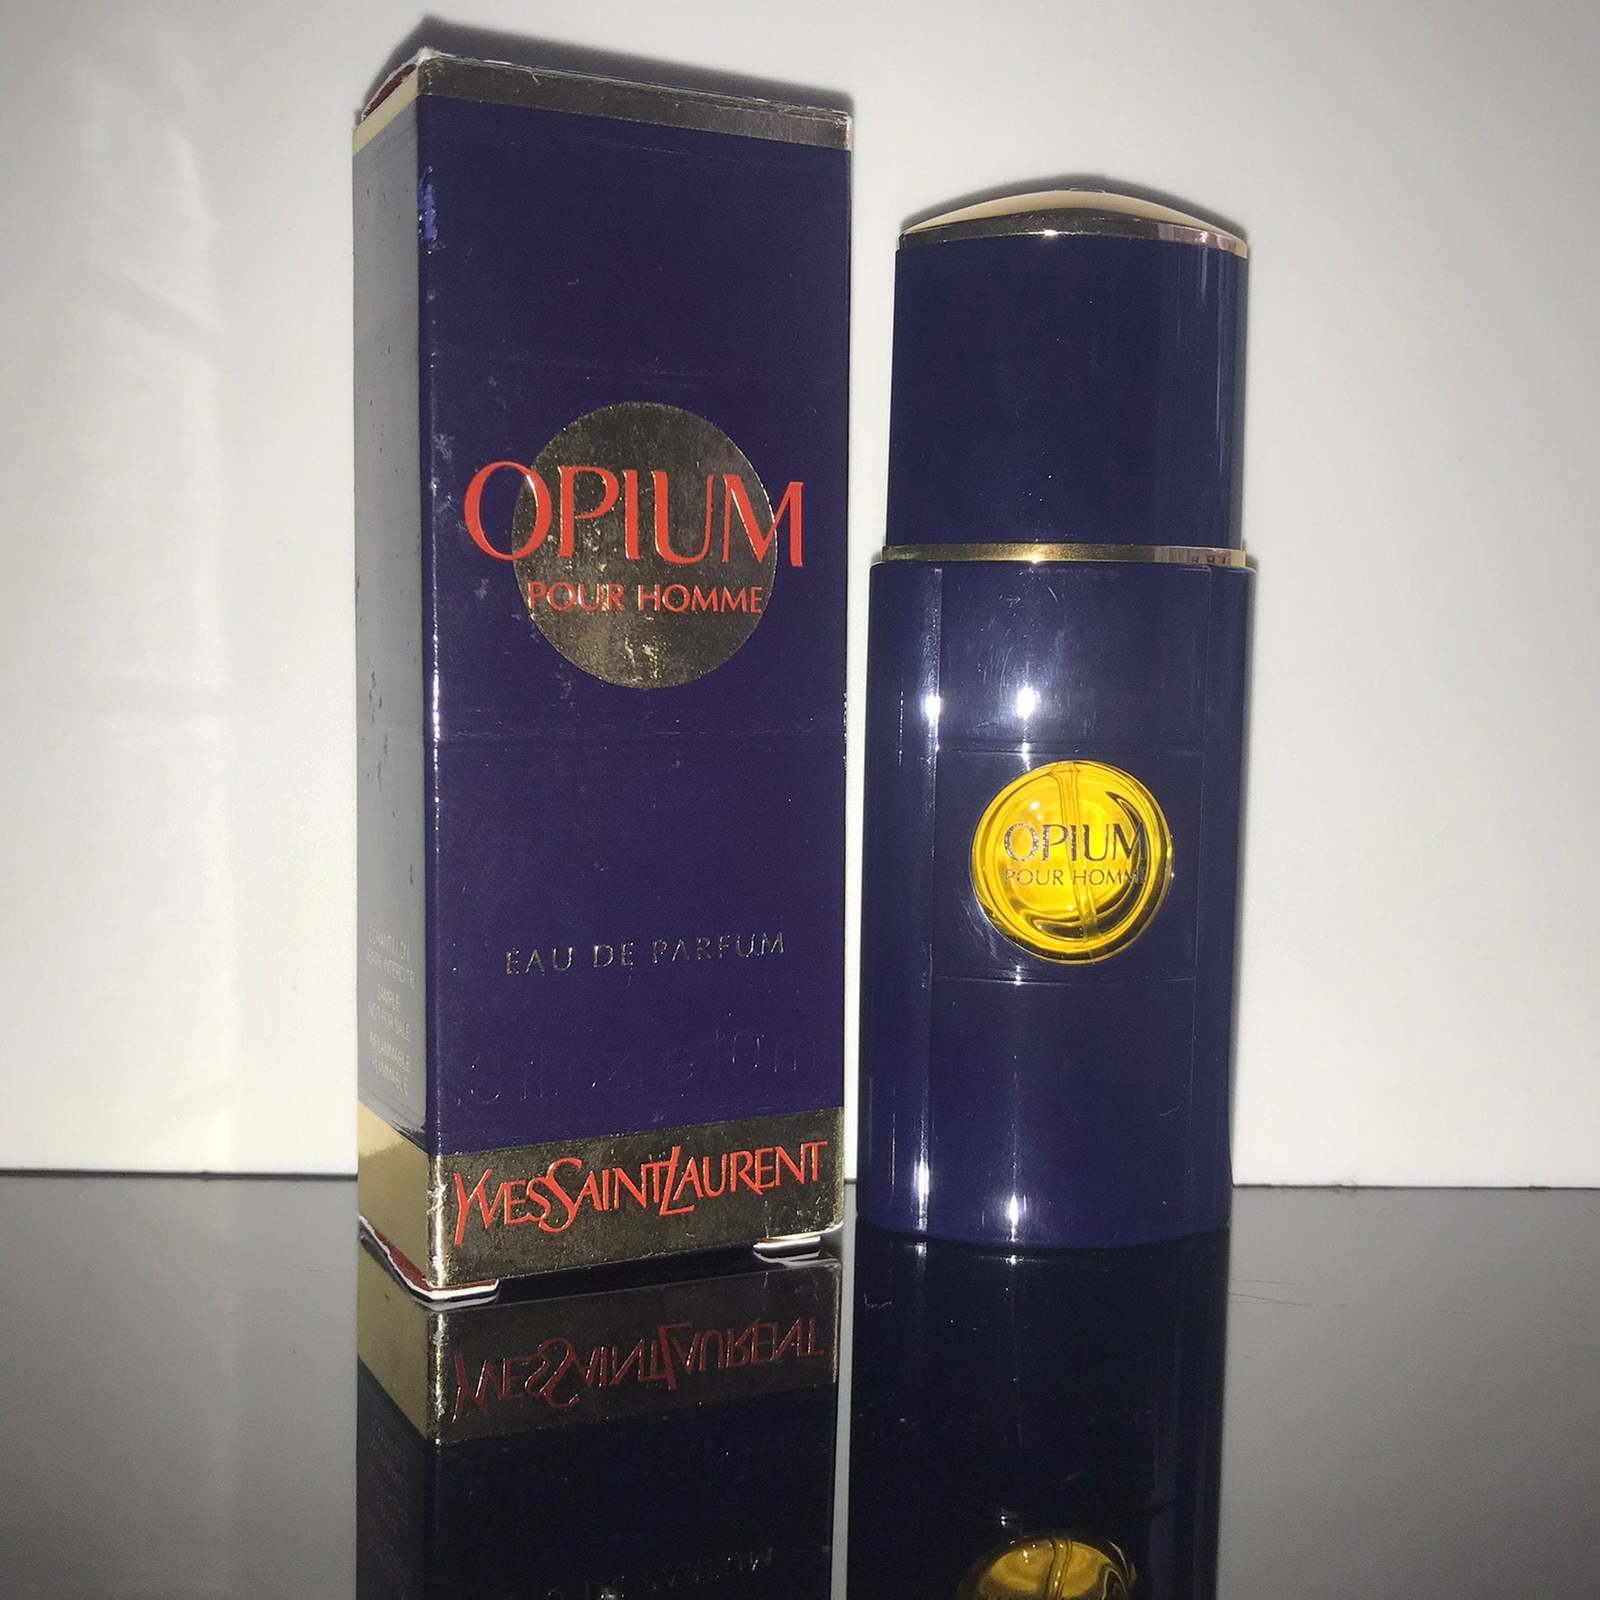 Primary image for Yves Saint Laurent - Opium pour Homme - Eau de Parfum - 10 ml - RARITAT, VINTAGE